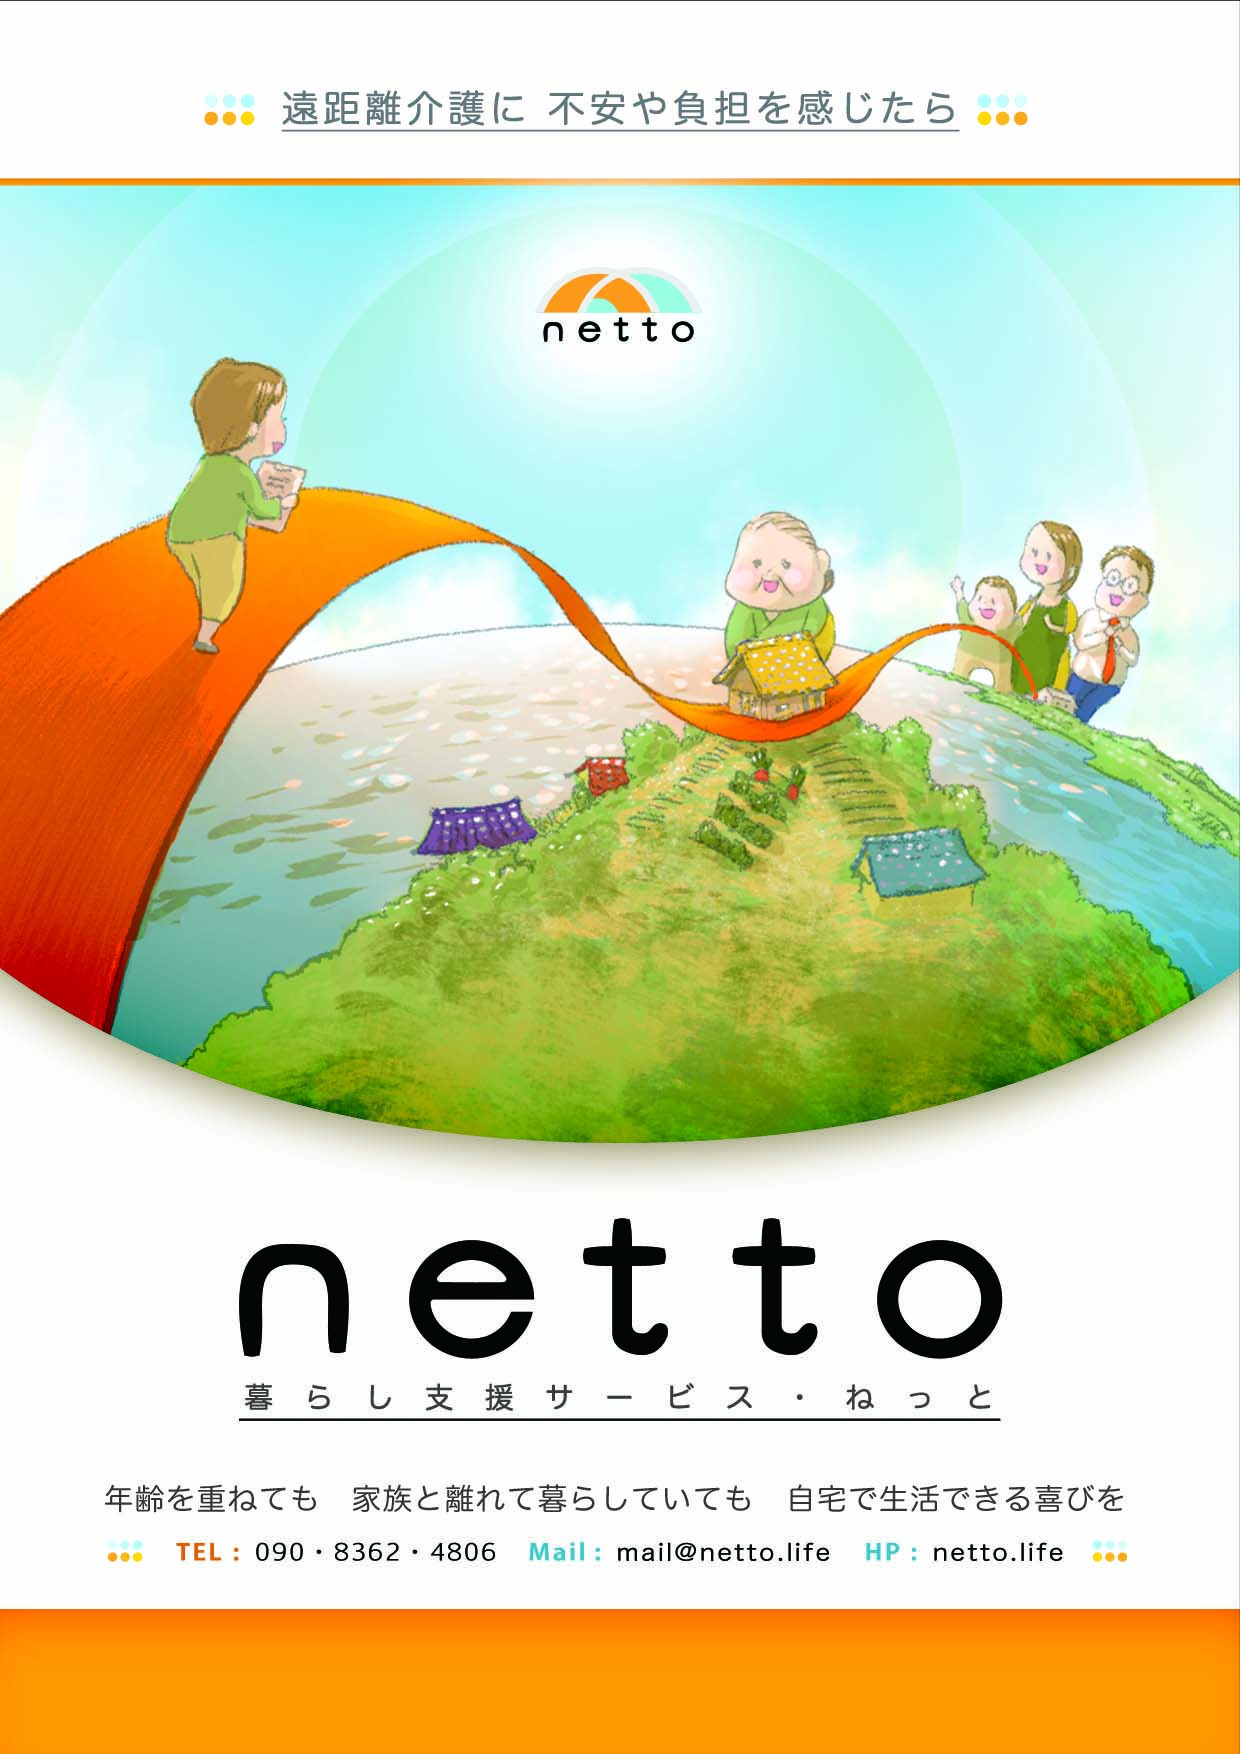 Care Service netto(net)